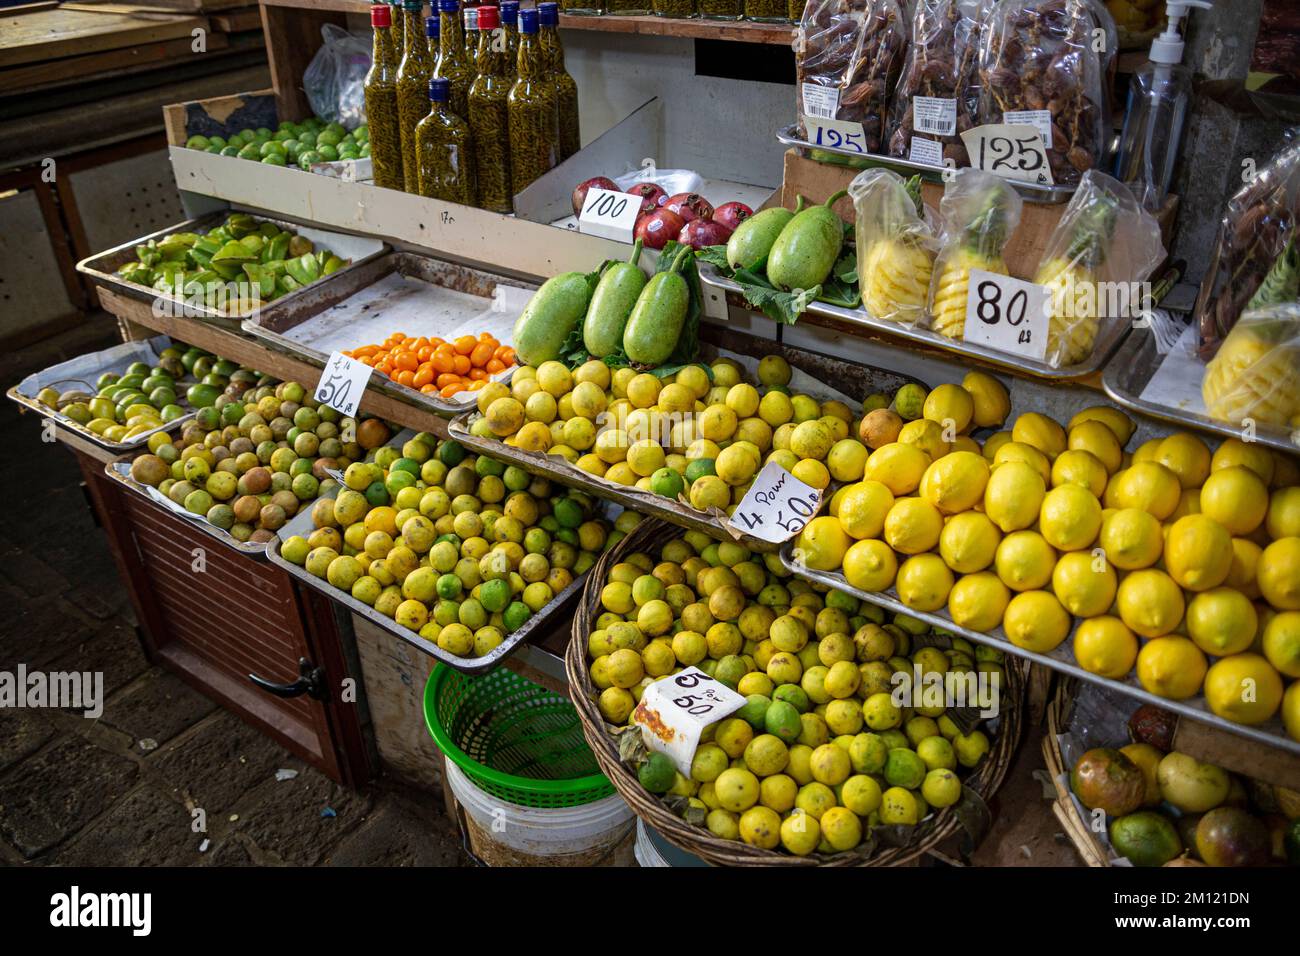 Marché central de l'île Maurice, Afrique : ce marché animé en plein air offre une variété de produits à vendre, notamment des fruits, des herbes, des épices et des potions. Banque D'Images